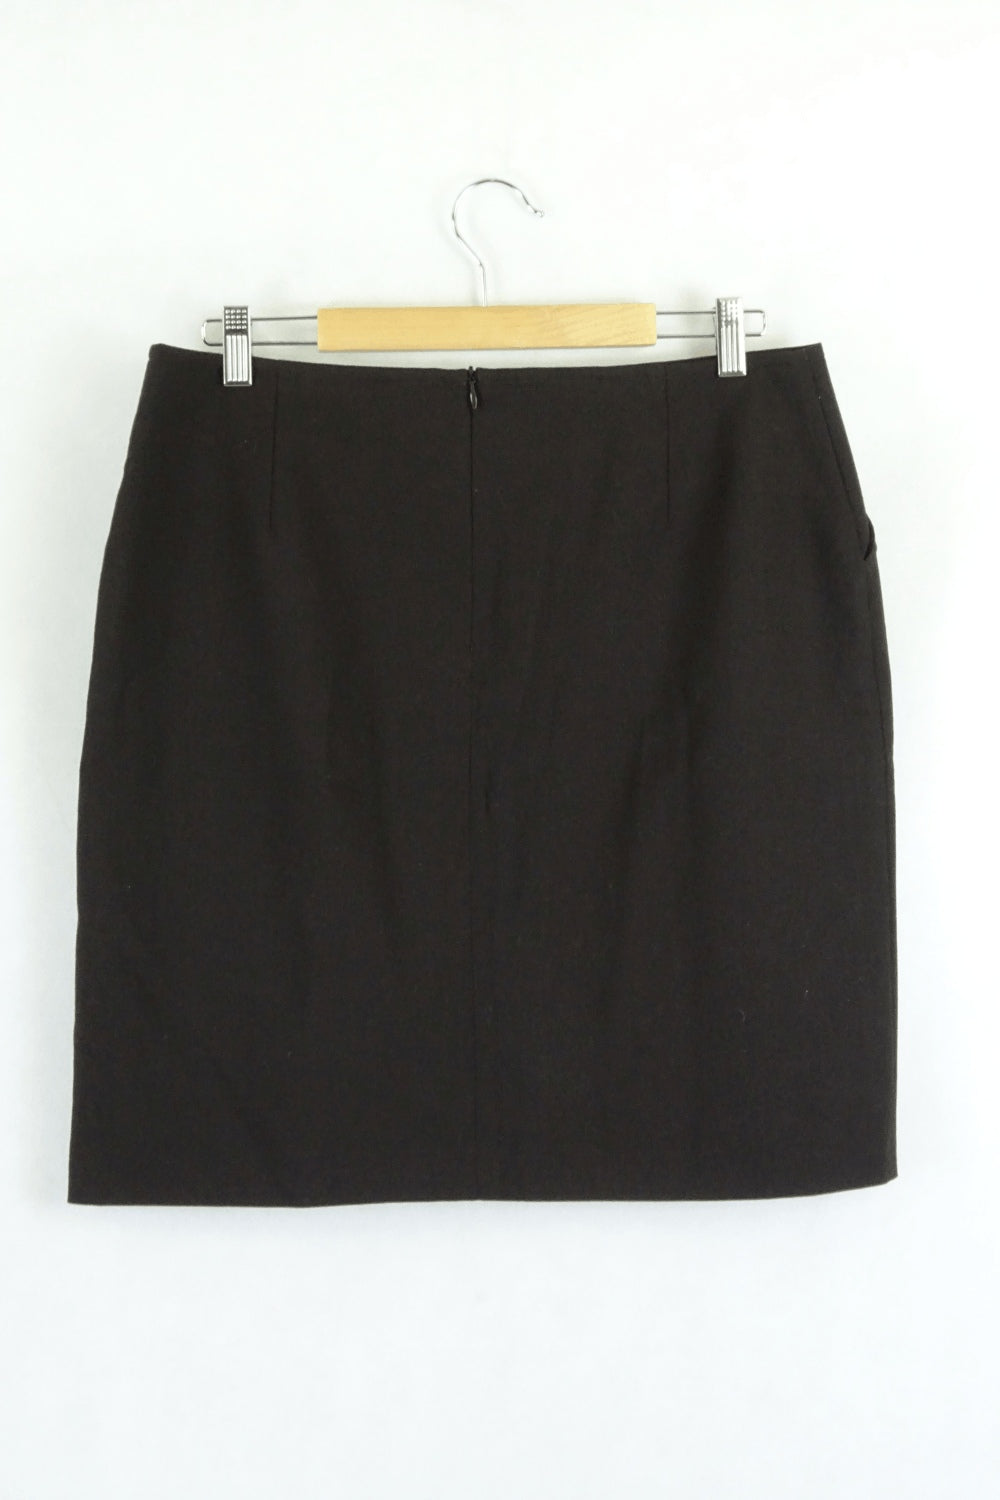 Cue Brown Skirt 14